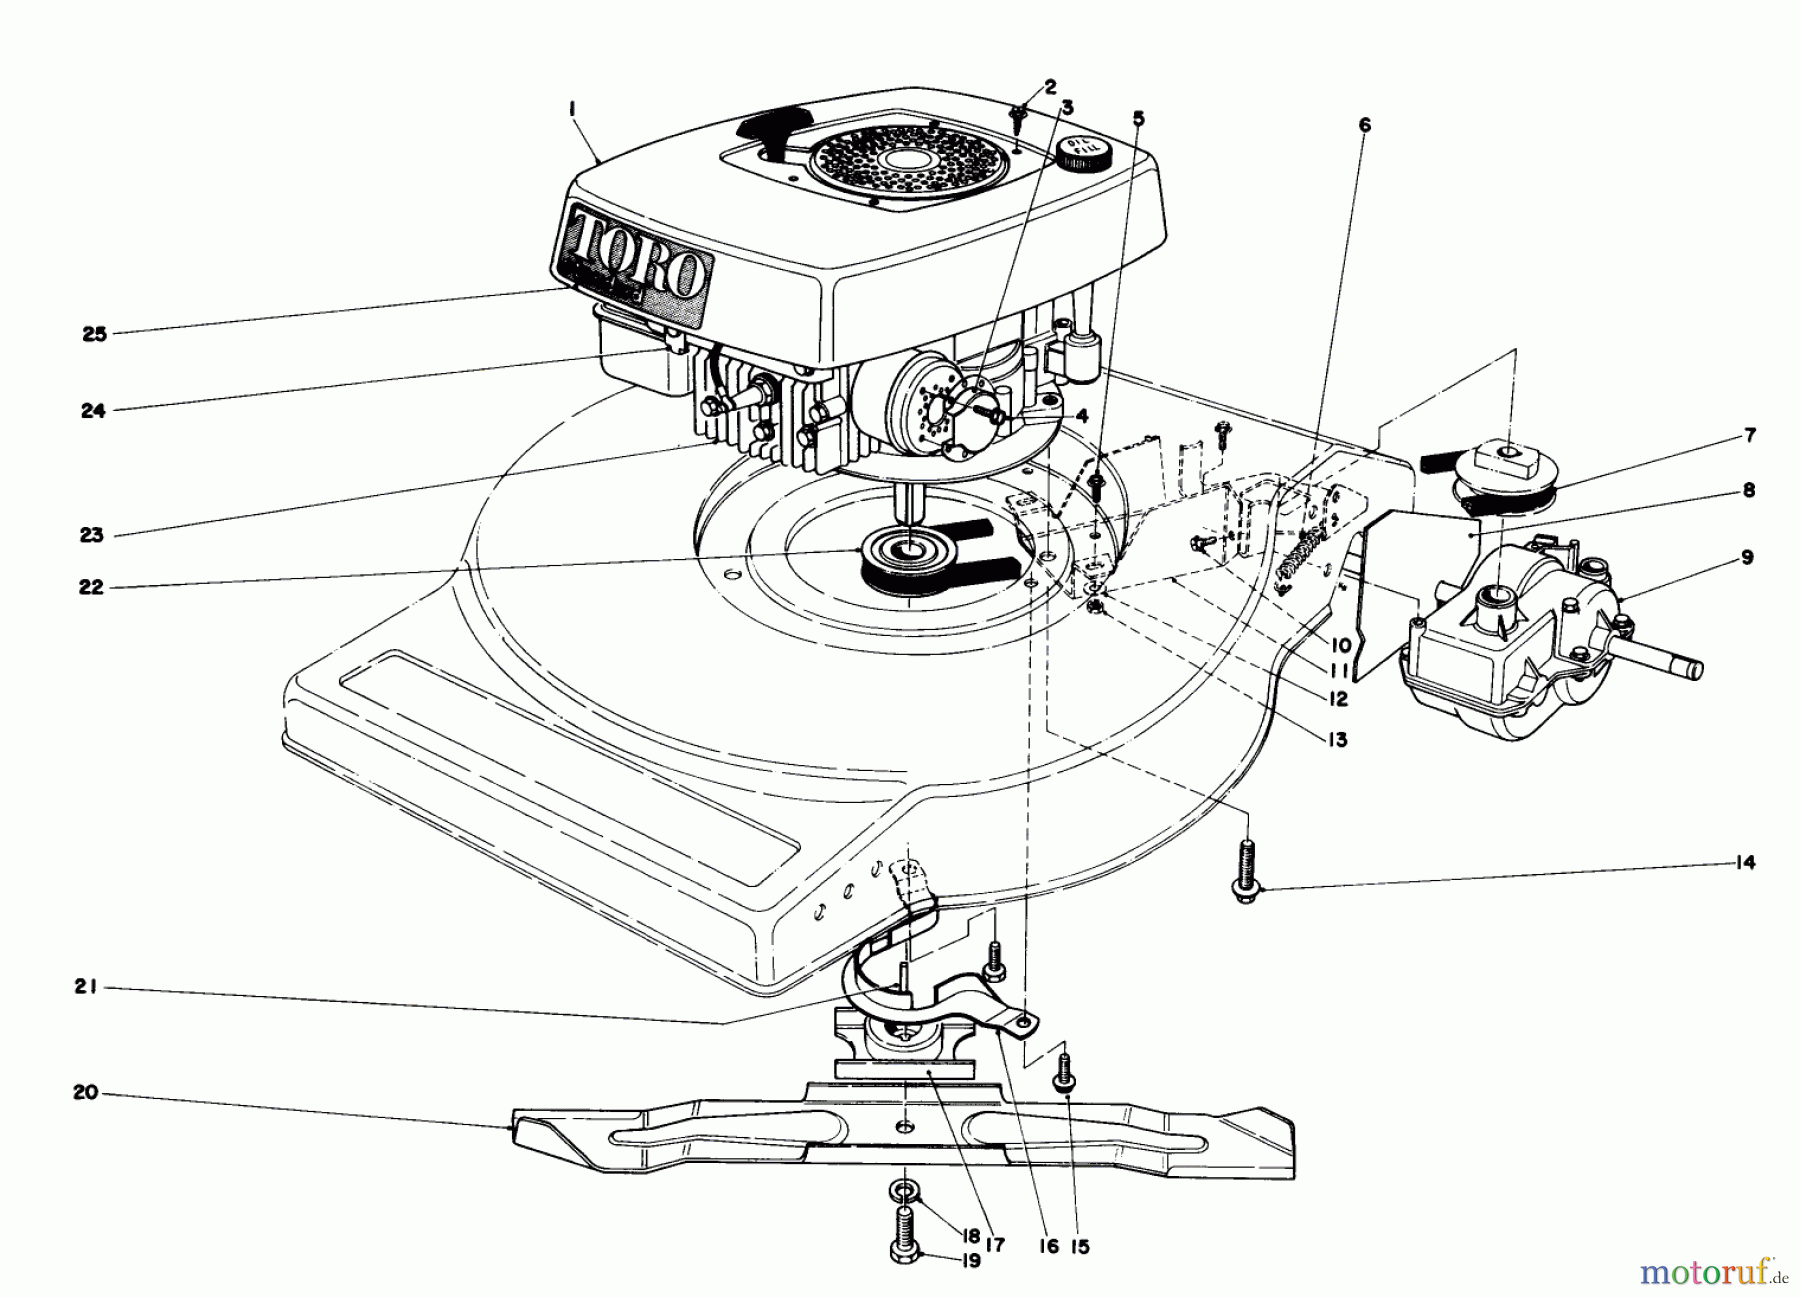  Toro Neu Mowers, Walk-Behind Seite 1 16880 - Toro Lawnmower, 1981 (1000001-1999999) ENGINE ASSEMBLY (MODEL NO. 16890)